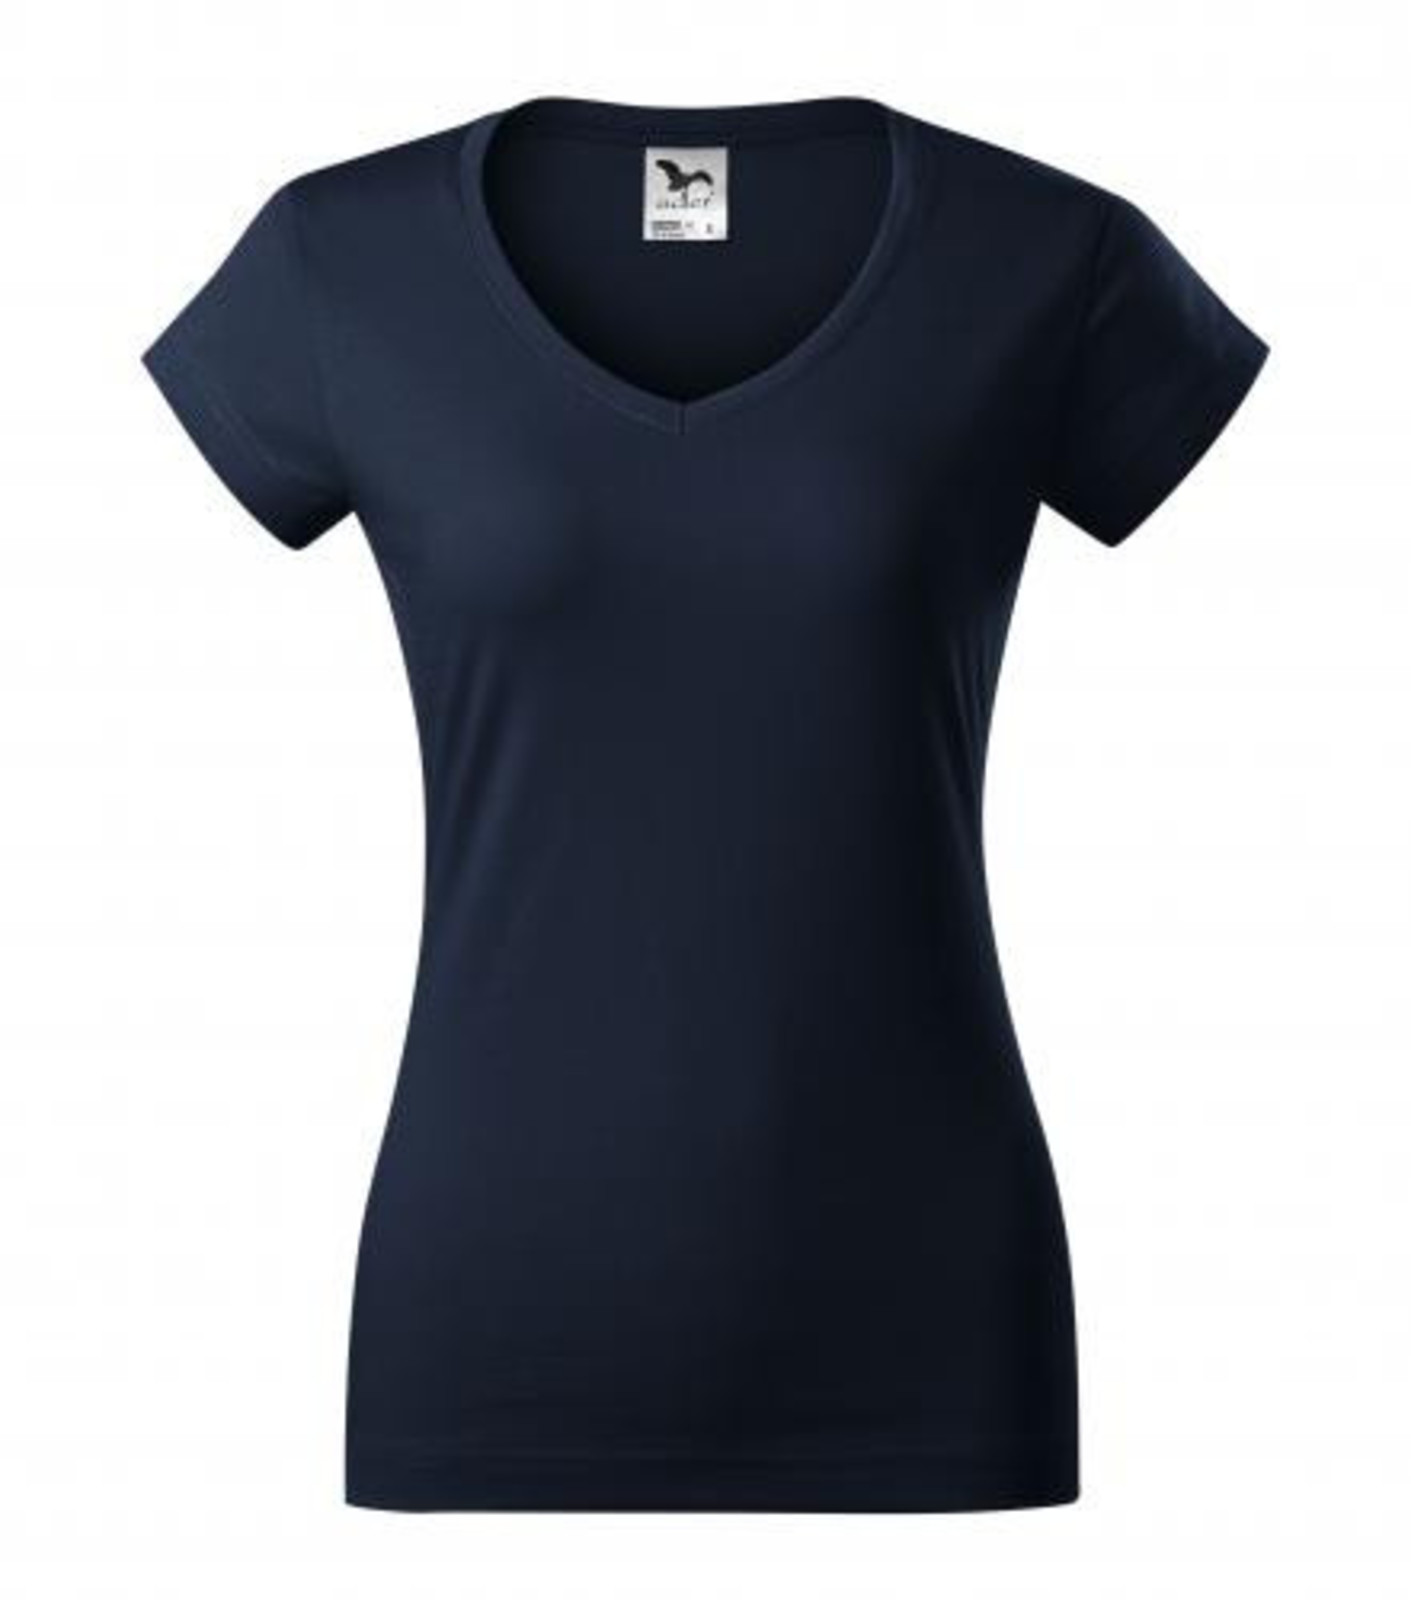 Dámske tričko s V výstrihom Adler Fit V-Neck 162 - veľkosť: L, farba: tmavo modrá